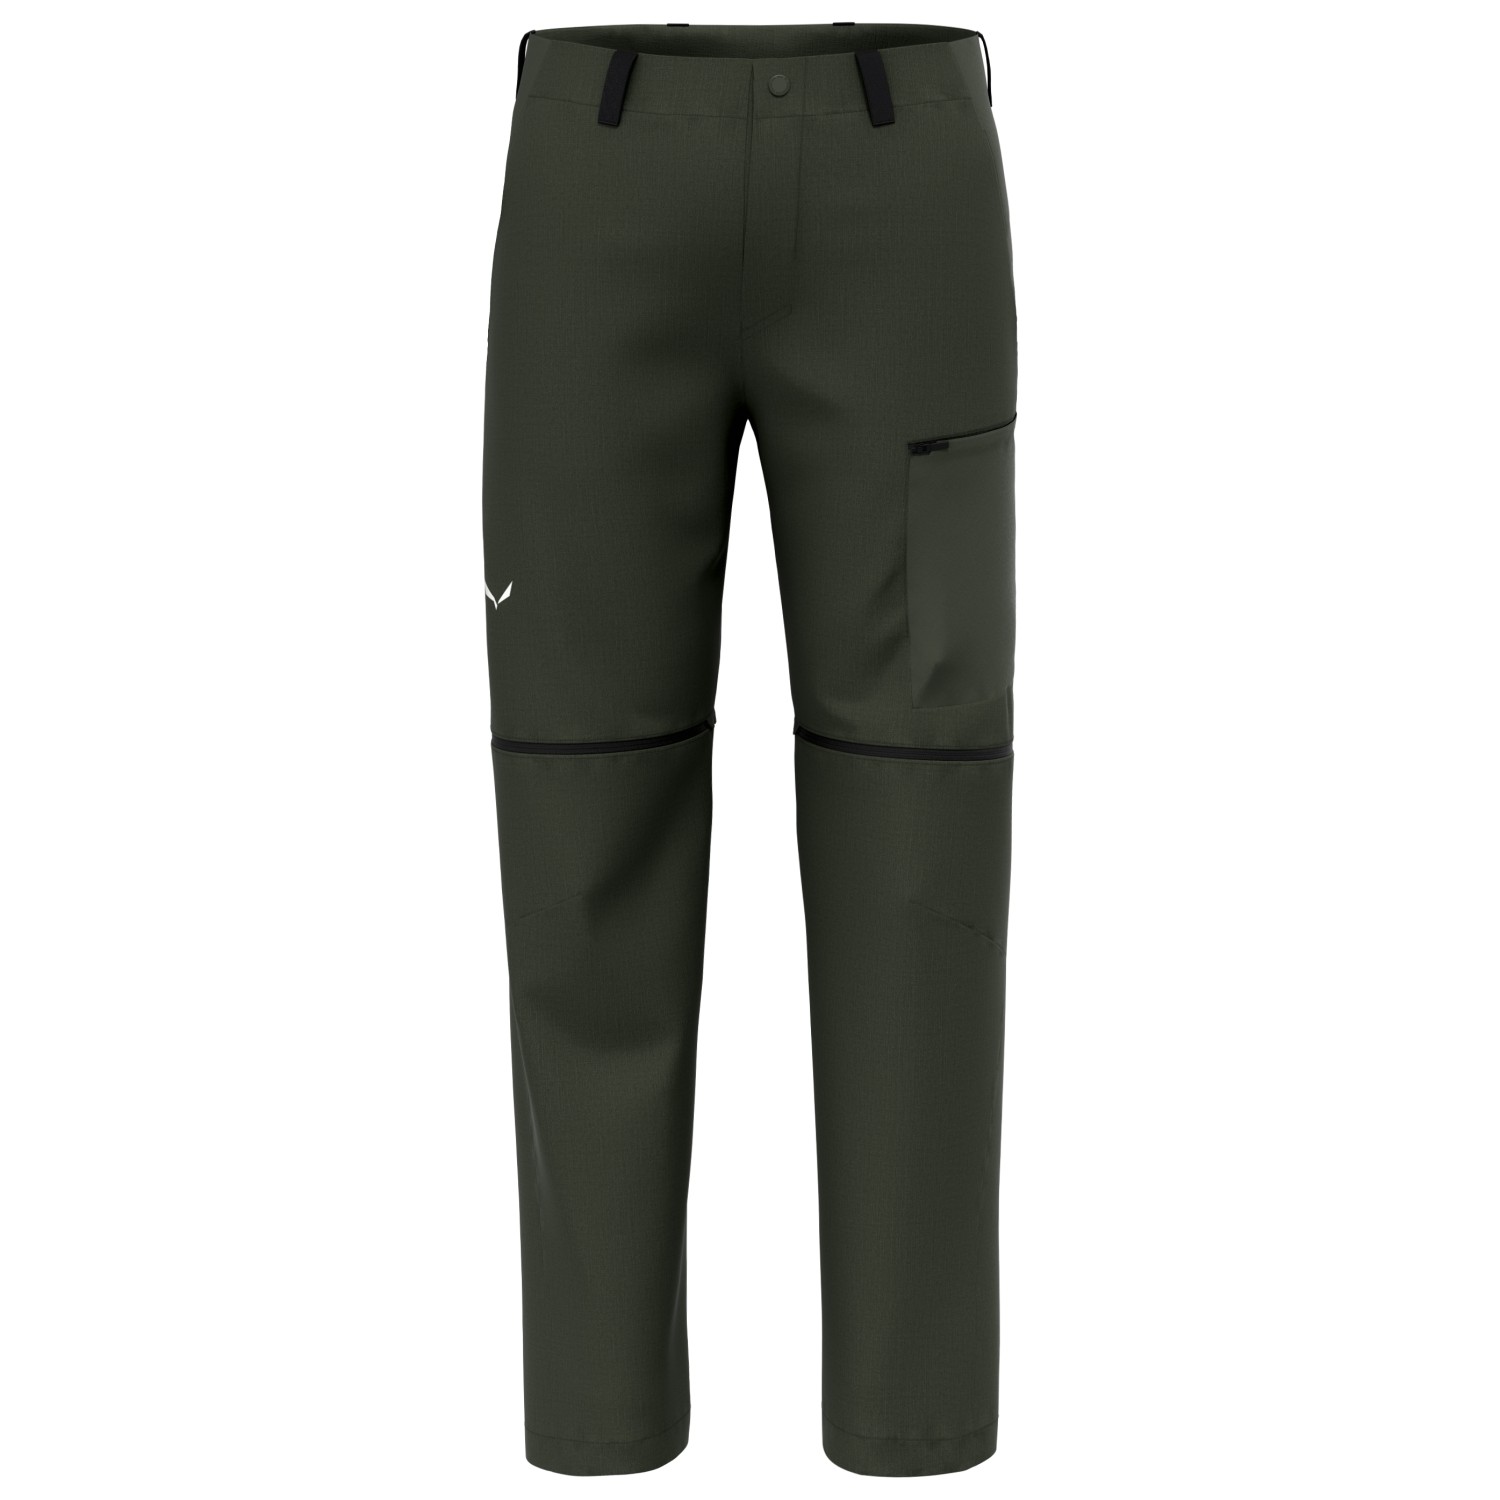 Трекинговые брюки Salewa Puez Hemp DST 2/1 Pant, цвет Dark Olive